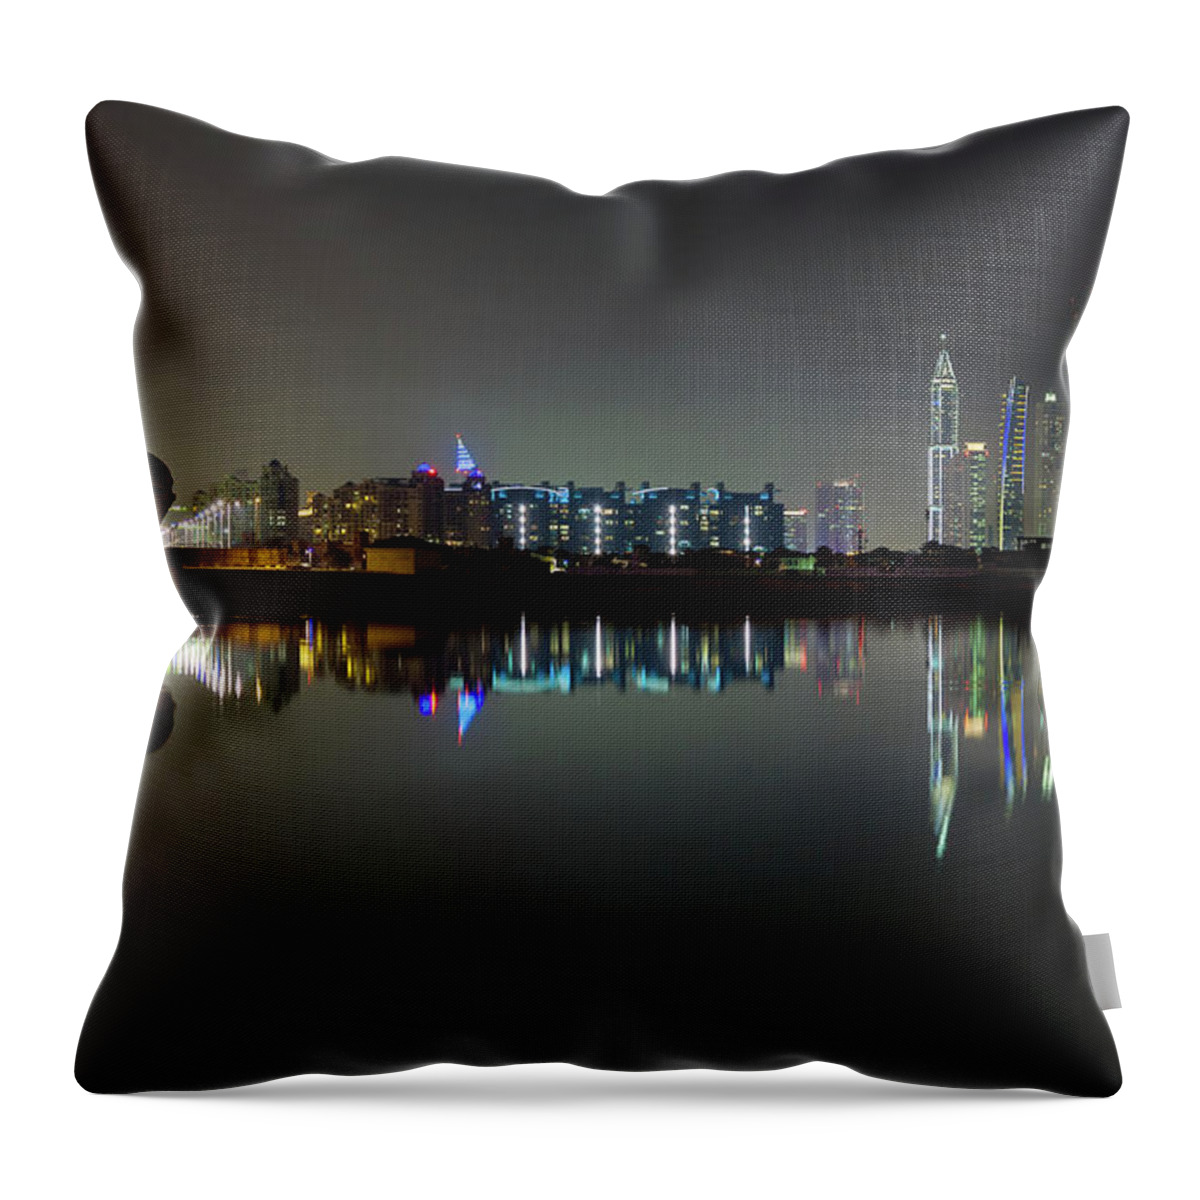 Dubai Throw Pillow featuring the photograph Dubai city skyline night time reflection by Andy Myatt